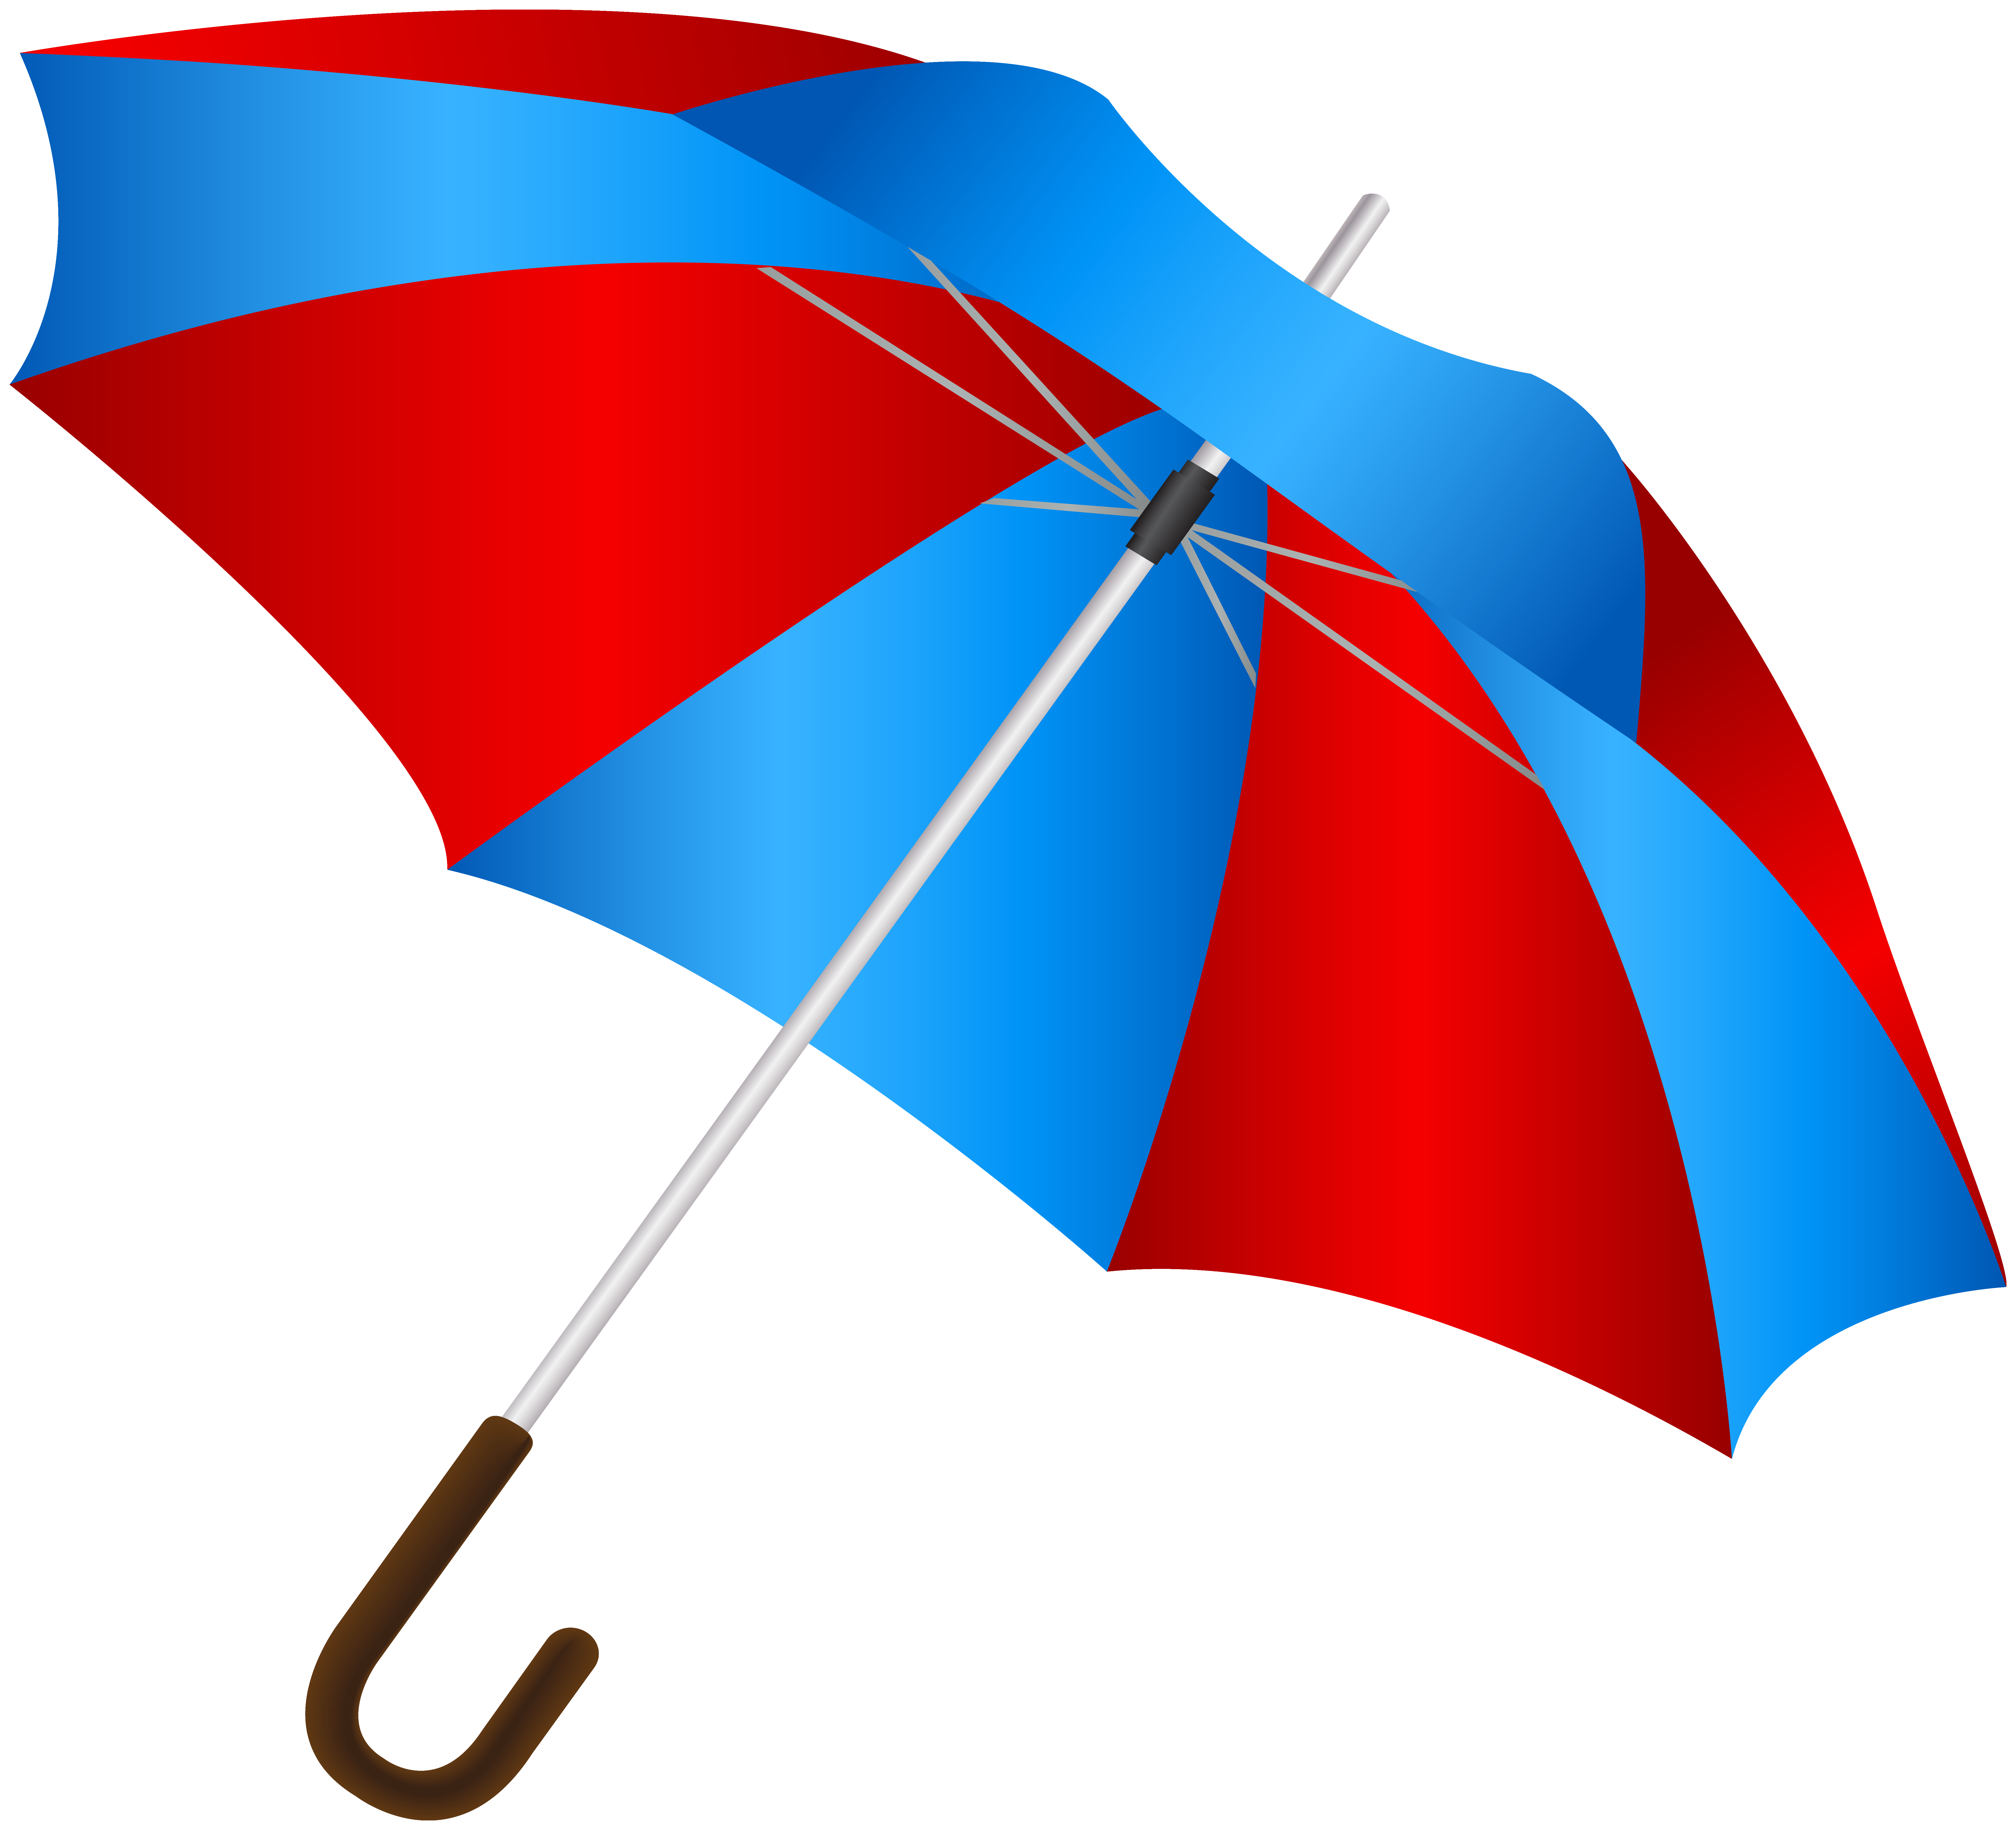 Blue red umbrella.